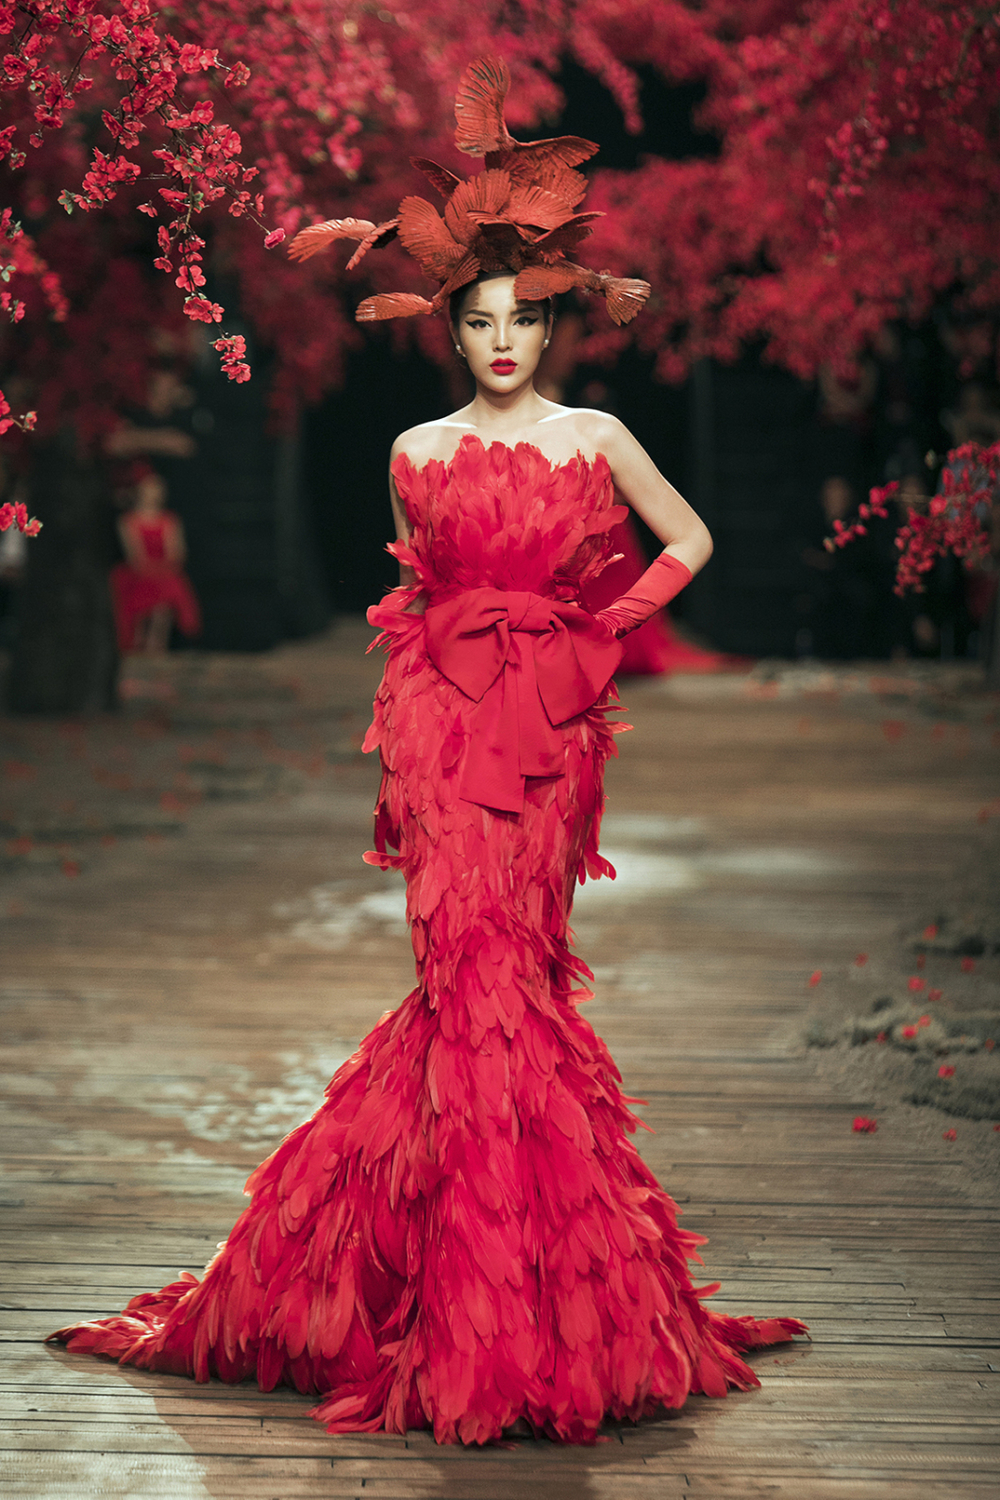 
Hoa hậu Kỳ Duyên một trong những vedette mới của làng thời trang Việt - Tin sao Viet - Tin tuc sao Viet - Scandal sao Viet - Tin tuc cua Sao - Tin cua Sao